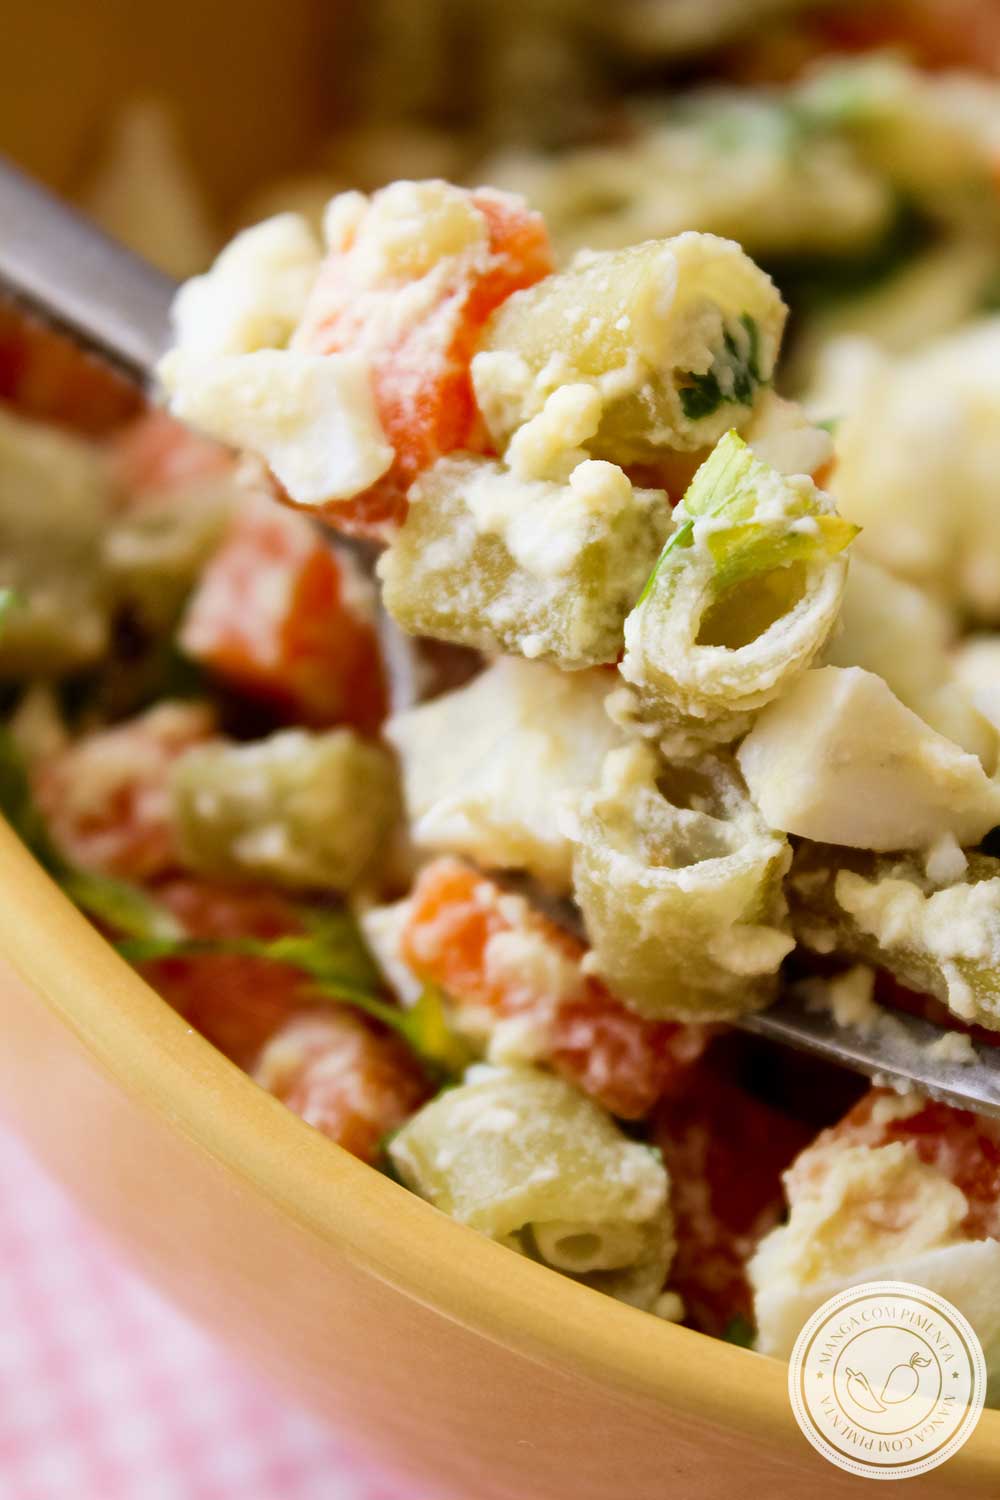 Receita de Salada de Vagem com Ovo e Cenoura - um prato delicioso para o almoço ou jantar da família!